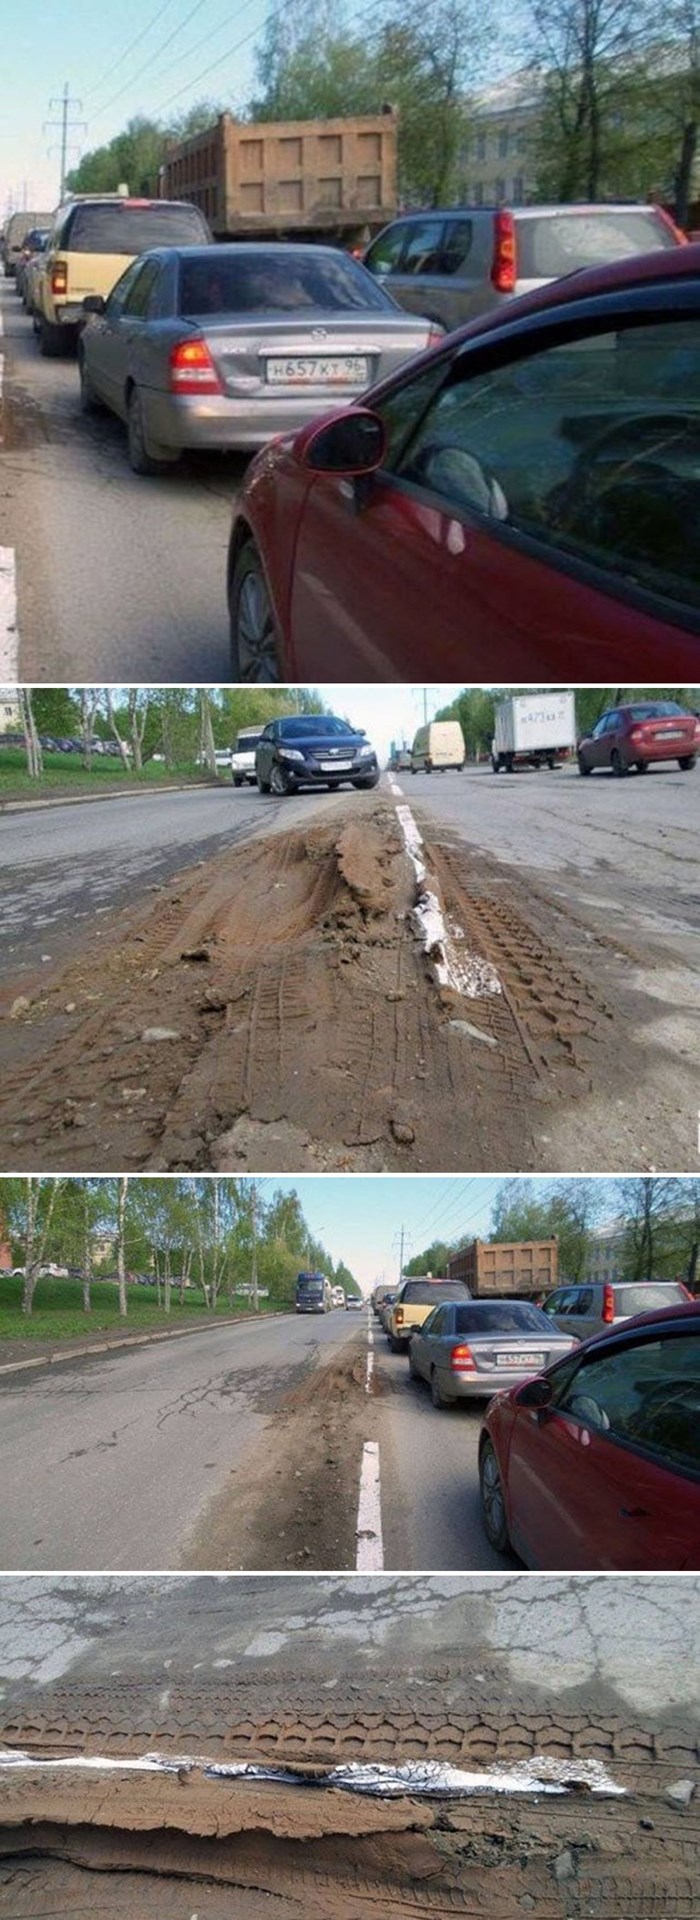 Rus je slikao kako su lijeni radnici označili isprekidanu crtu na cesti, ovoga nema ni u Hrvatskoj